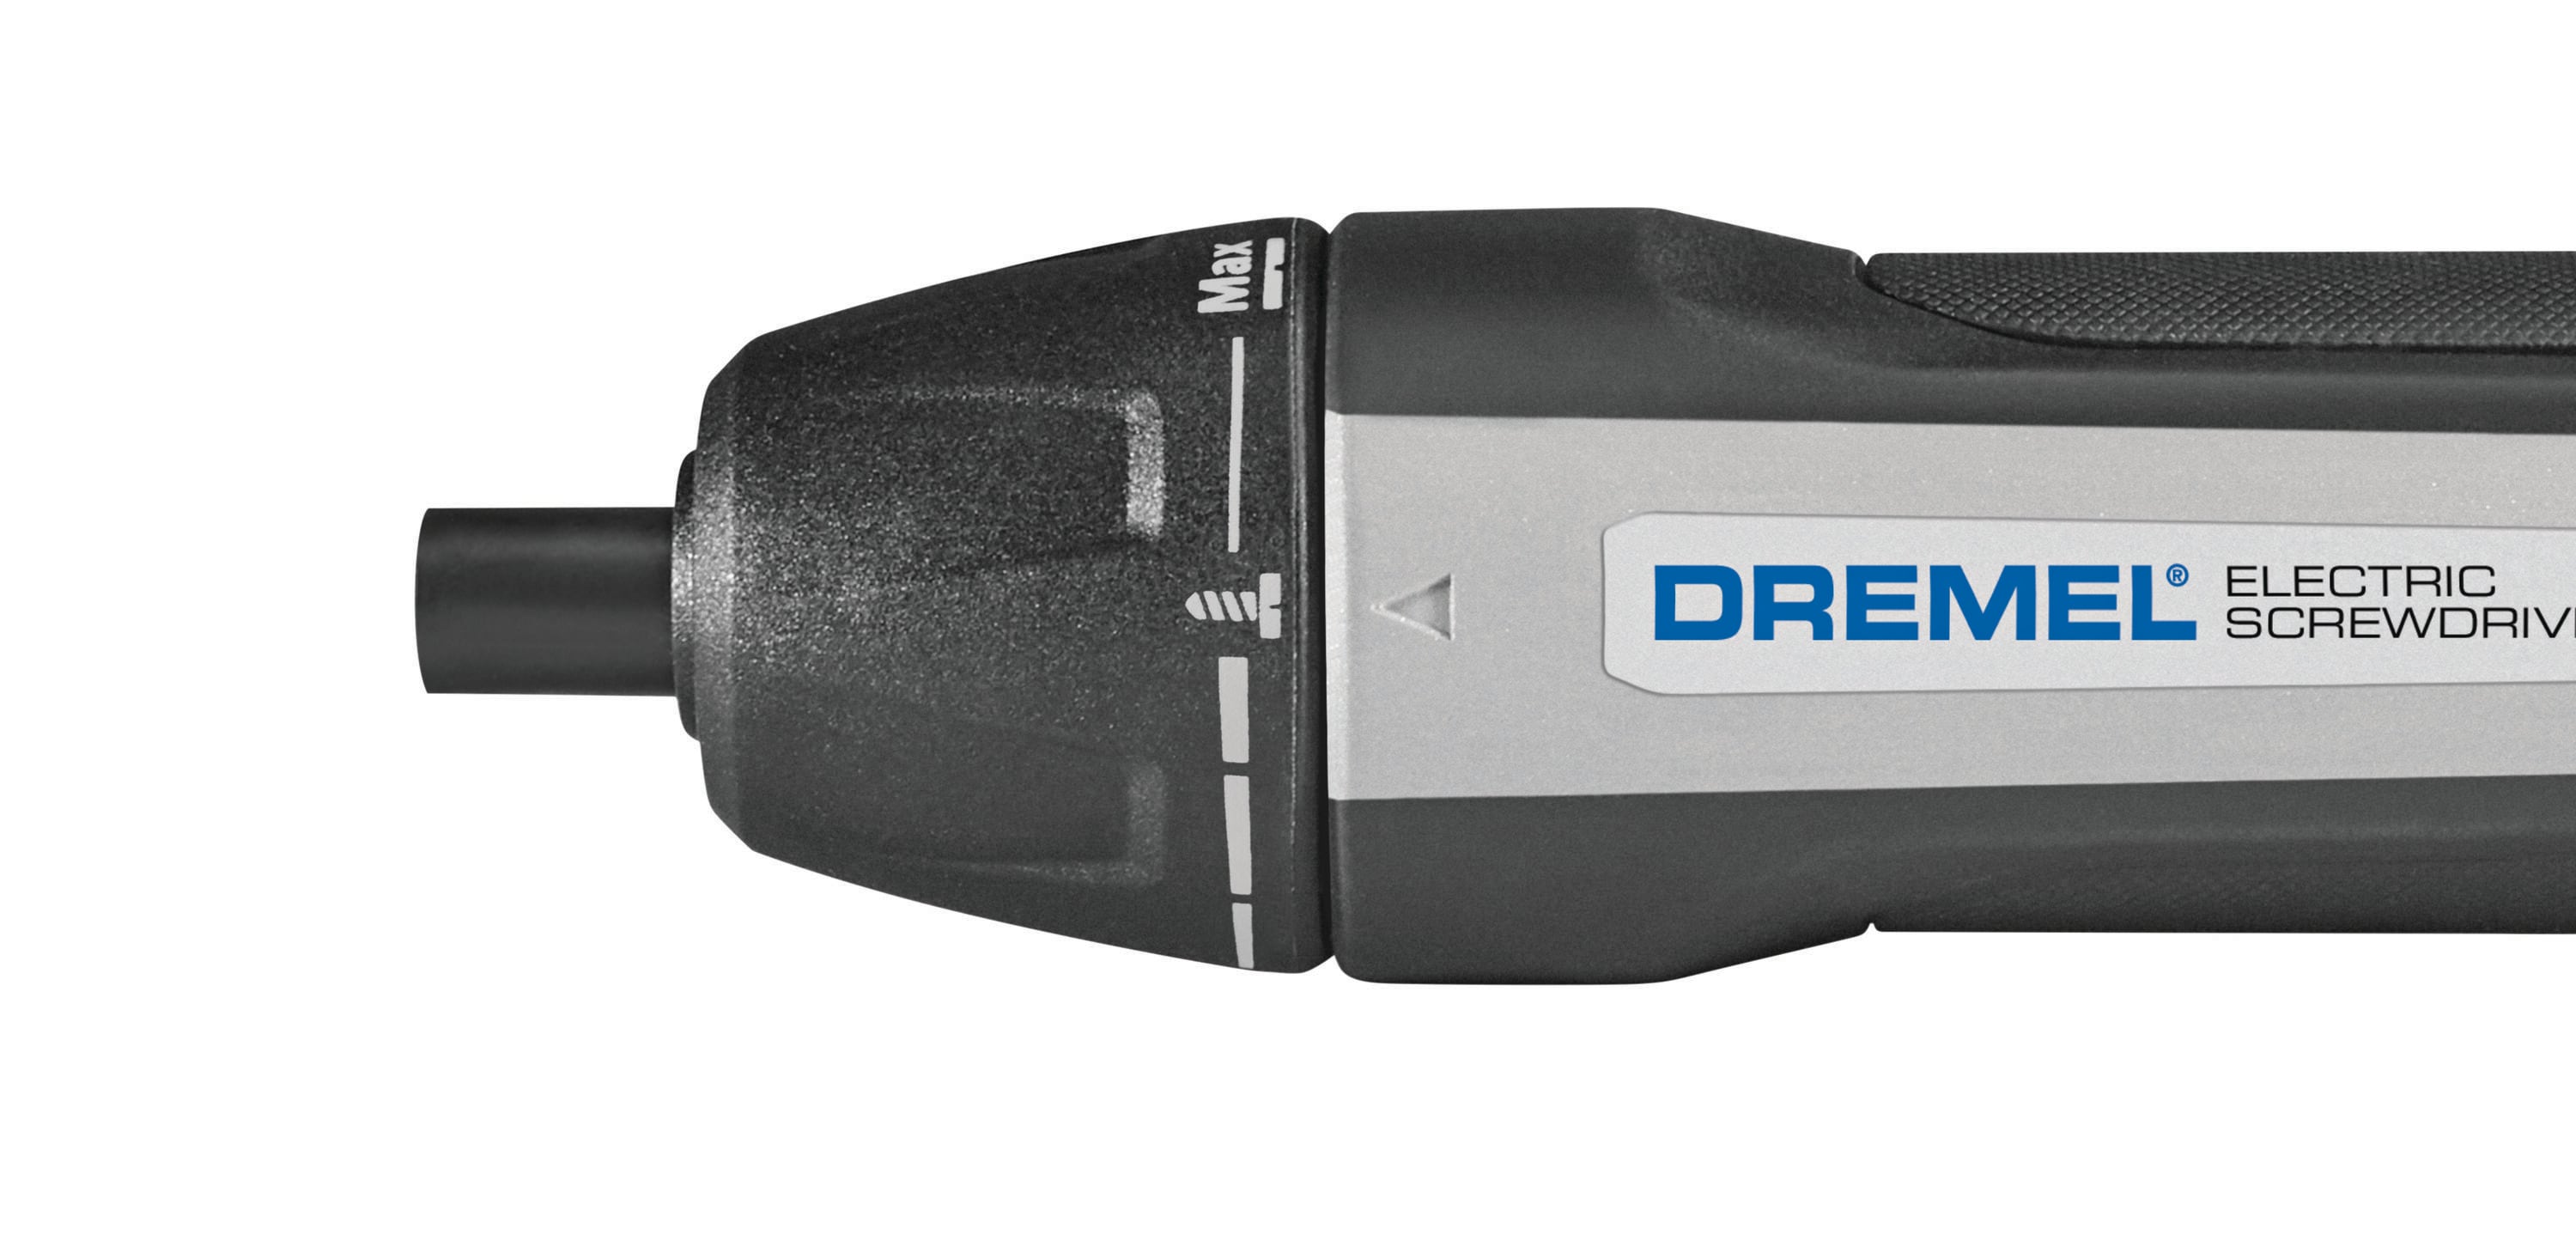 DeWalt/Dremel/Black & Decker Power Tools - tools - by owner - sale